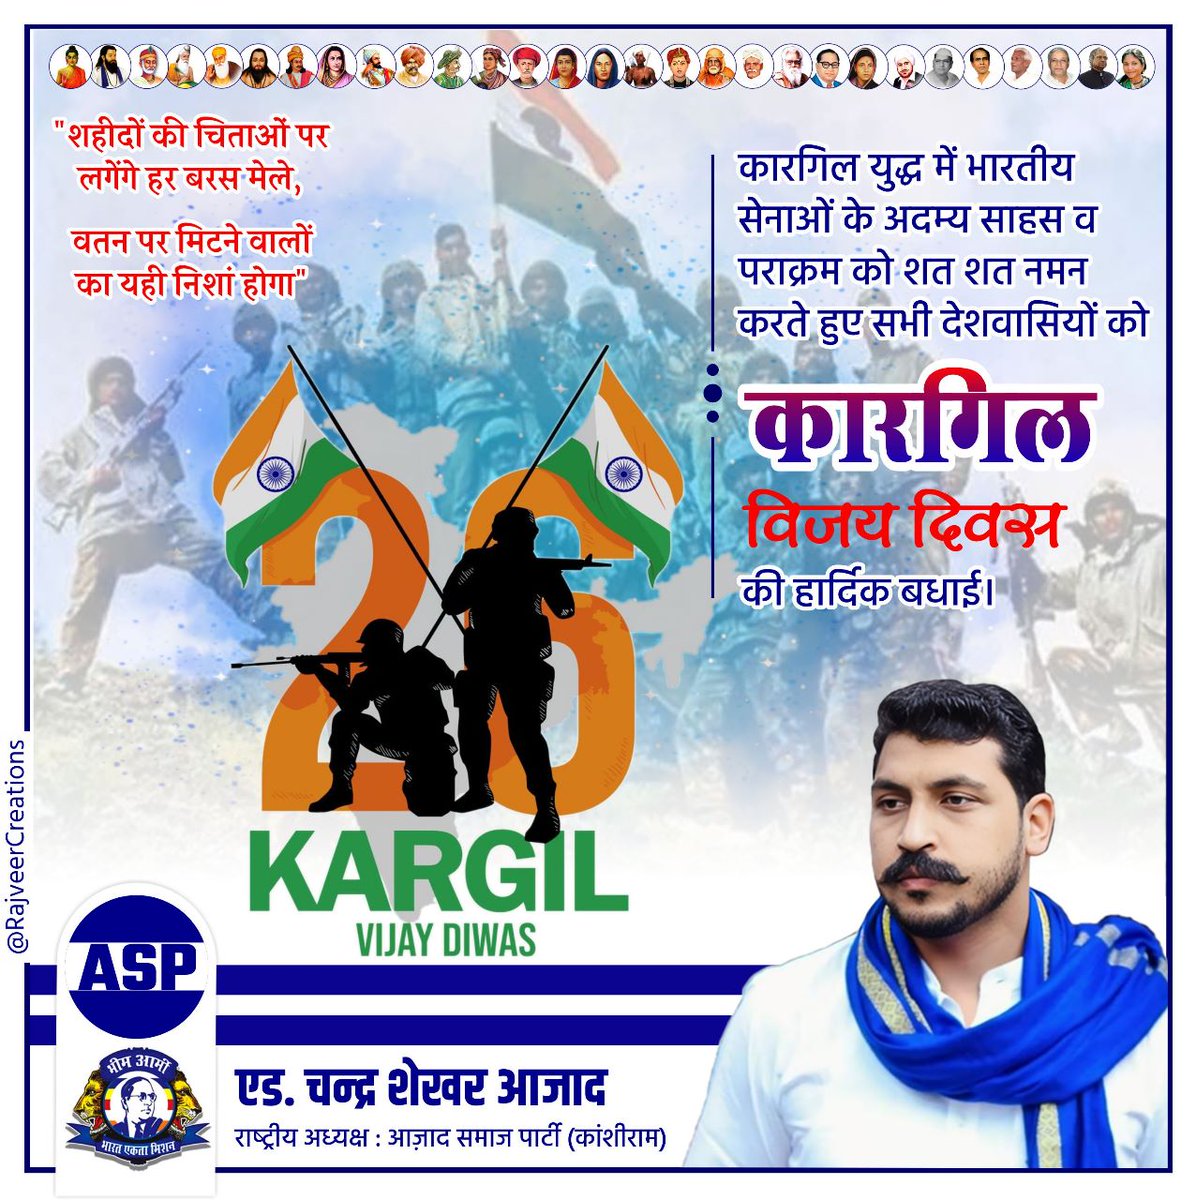 'शहीदों की चिताओं पर लगेंगे हर बरस मेले, वतन पर मिटने वालों का यही निशां होगा' कारगिल युद्ध में भारतीय सेनाओं के अदम्य साहस व पराक्रम को शत शत नमन करते हुए सभी देशवासियों को कारगिल विजय दिवस की हार्दिक बधाई। #kargilvijaydivas